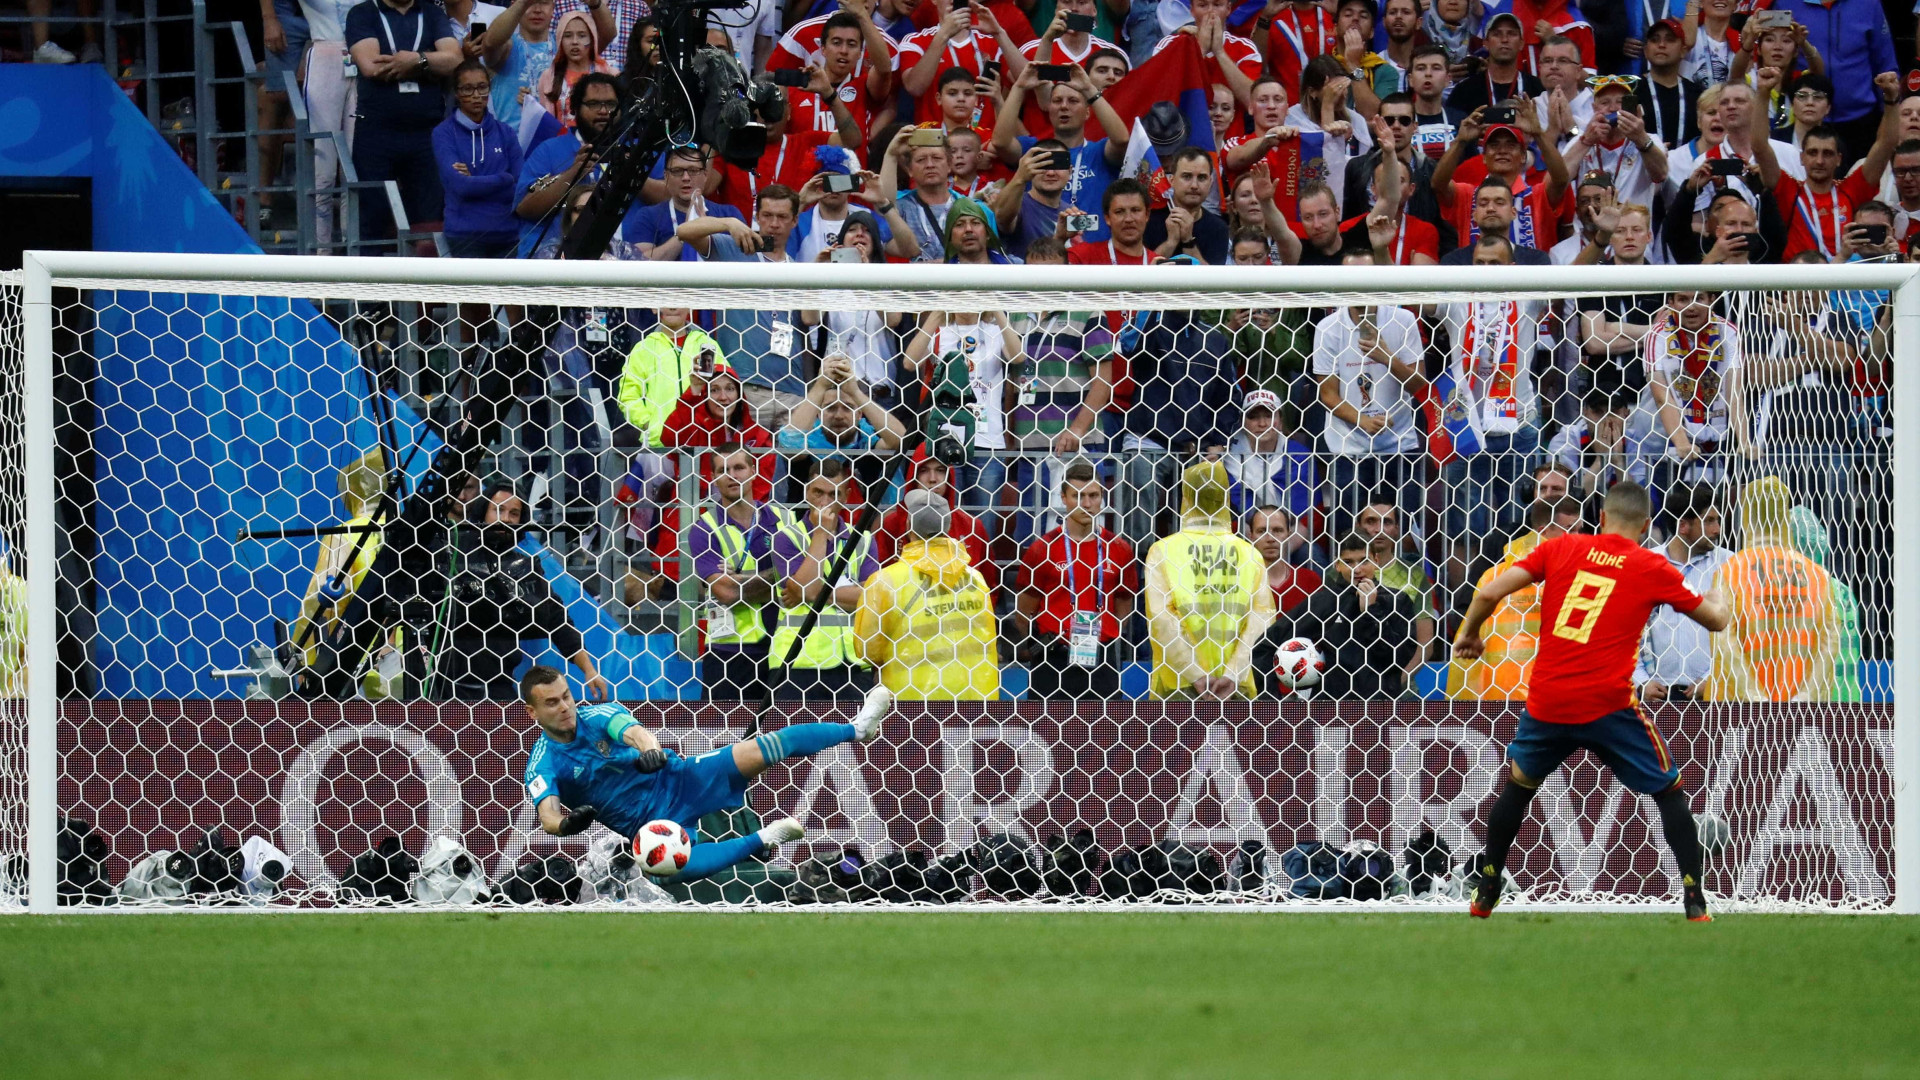 Rússia vence a Espanha nos pênaltis e vai às quartas de final da Copa